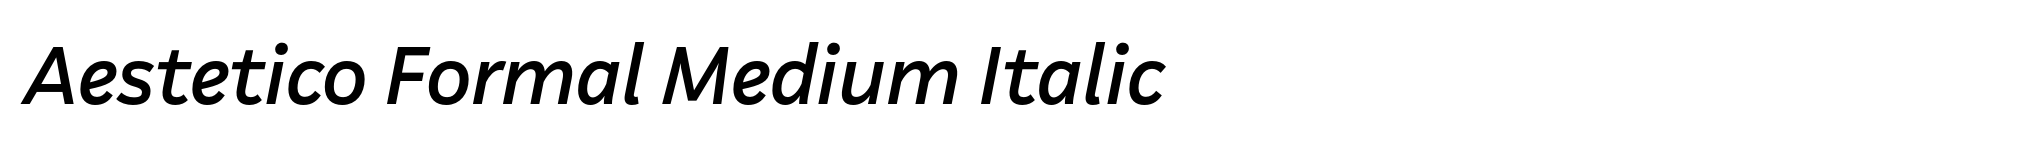 Aestetico Formal Medium Italic image